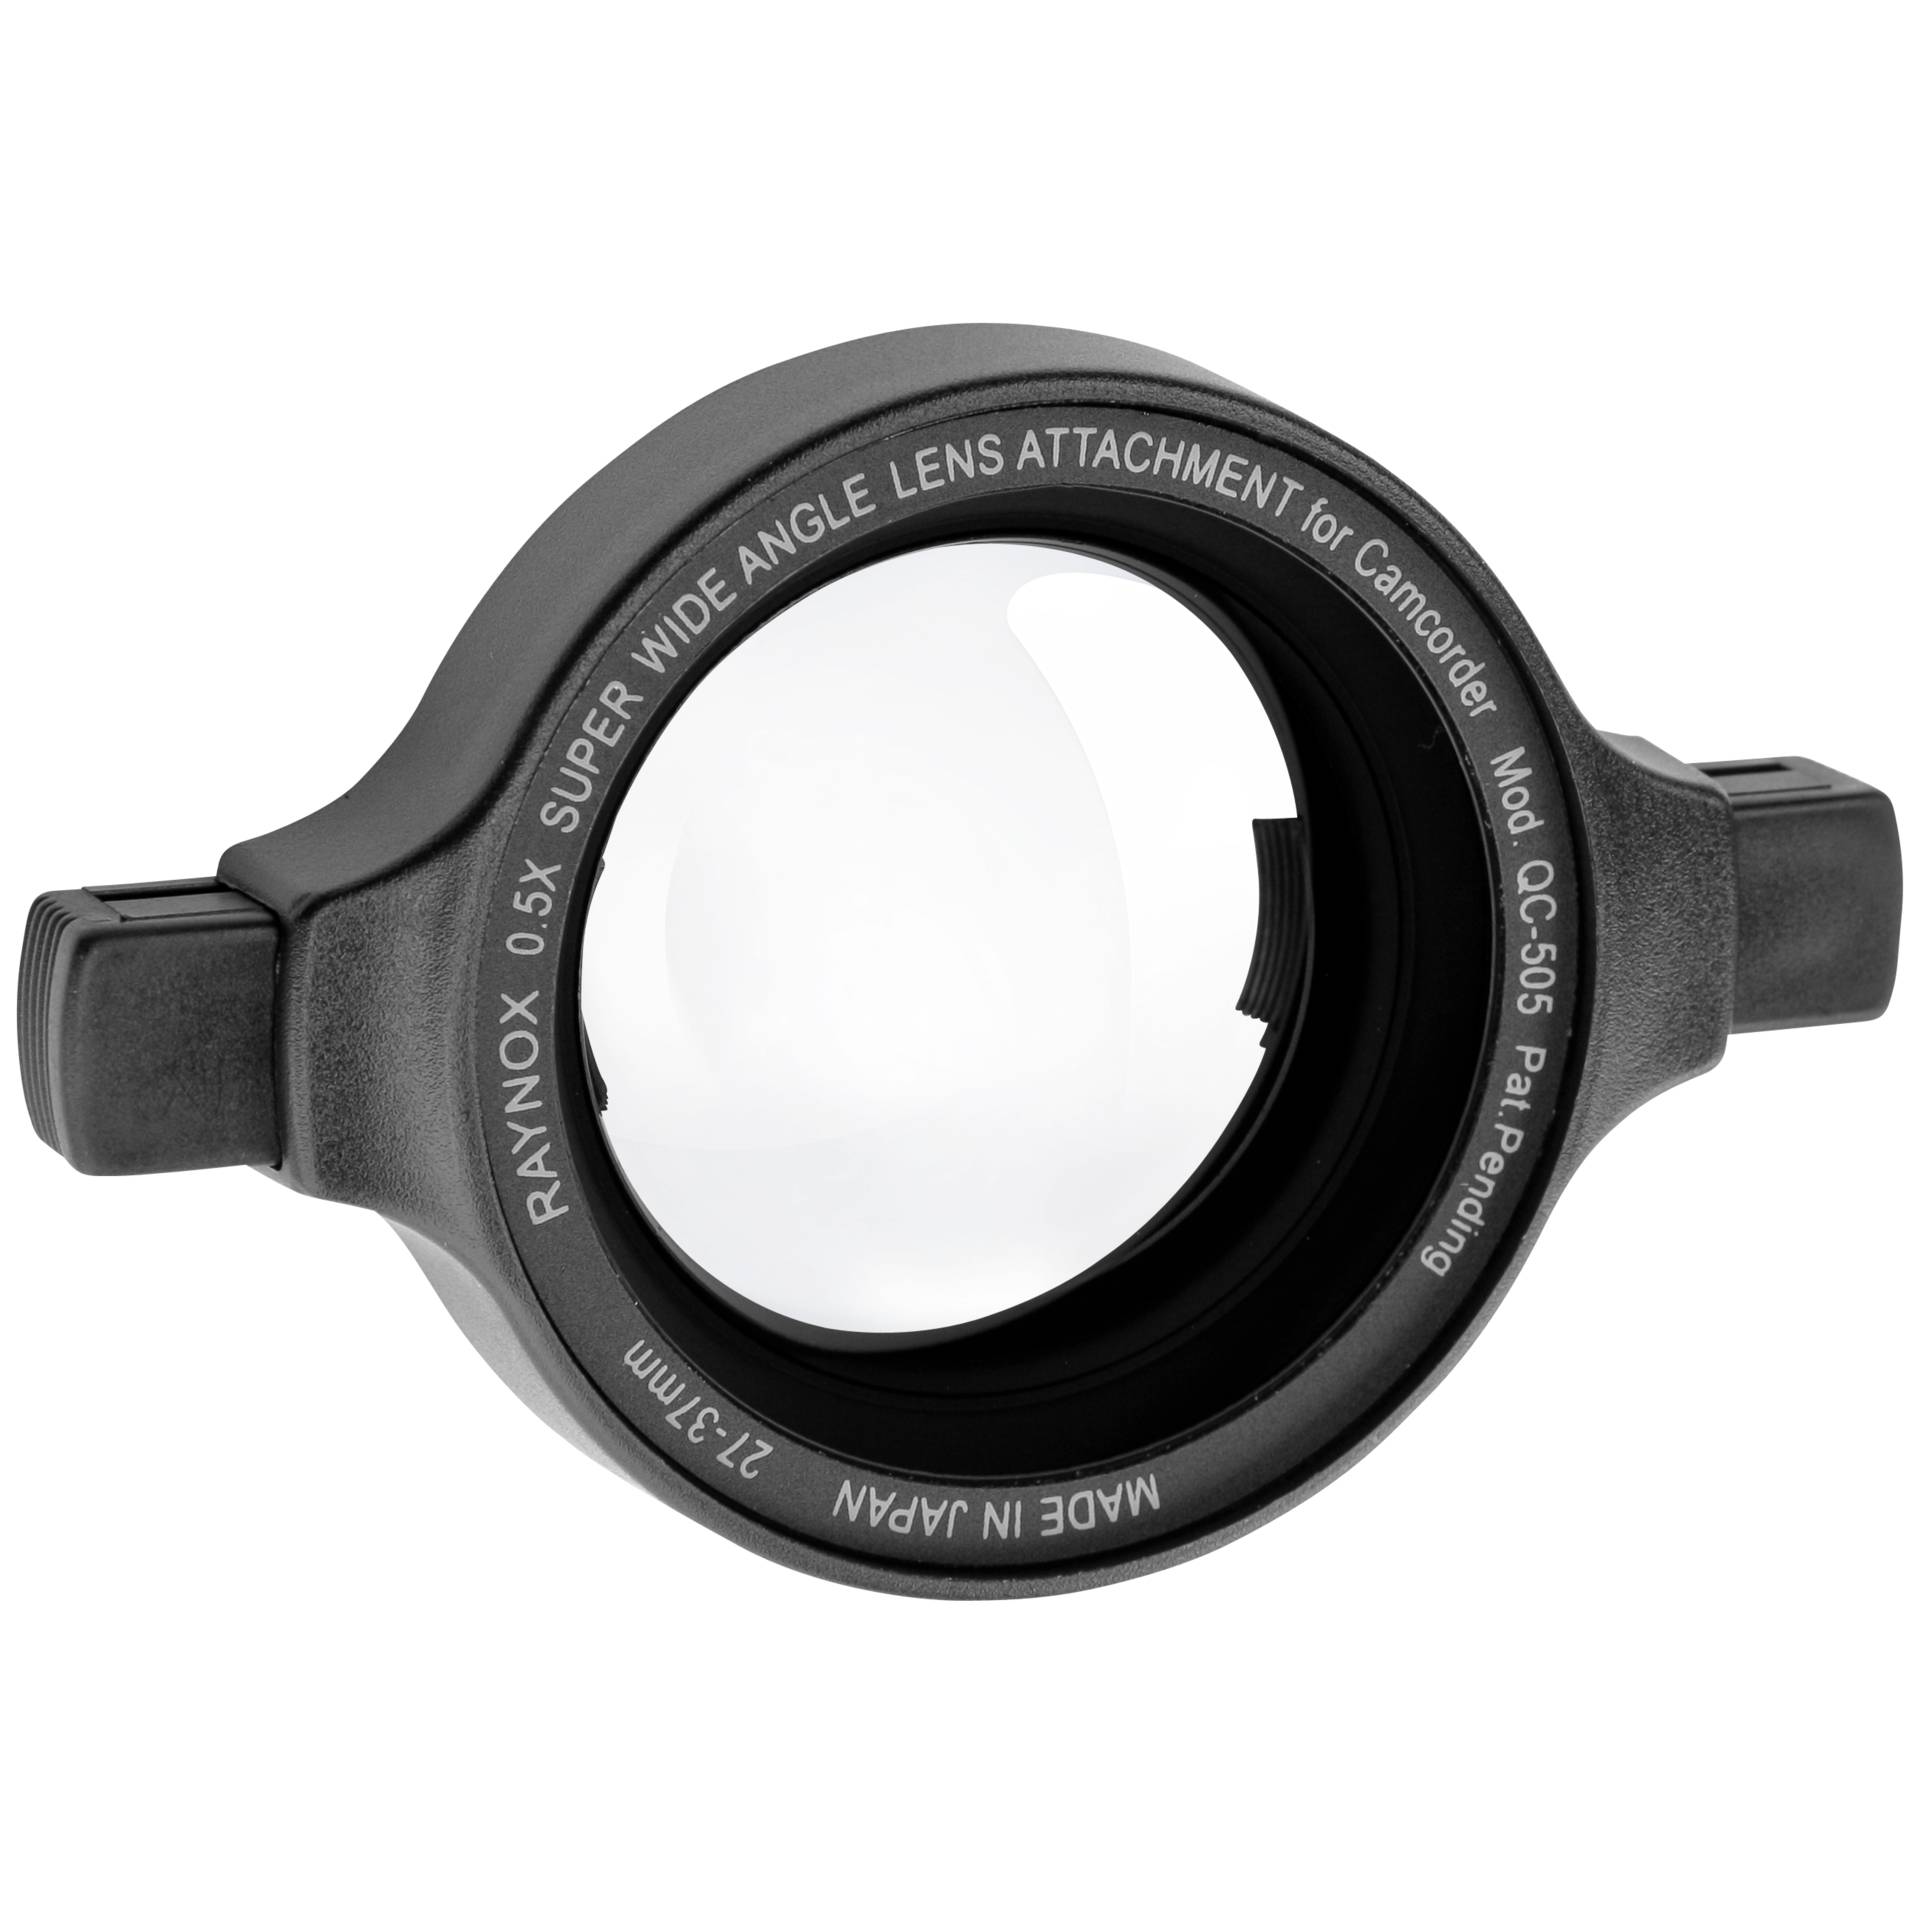 Raynox QC-505 wide angle lens